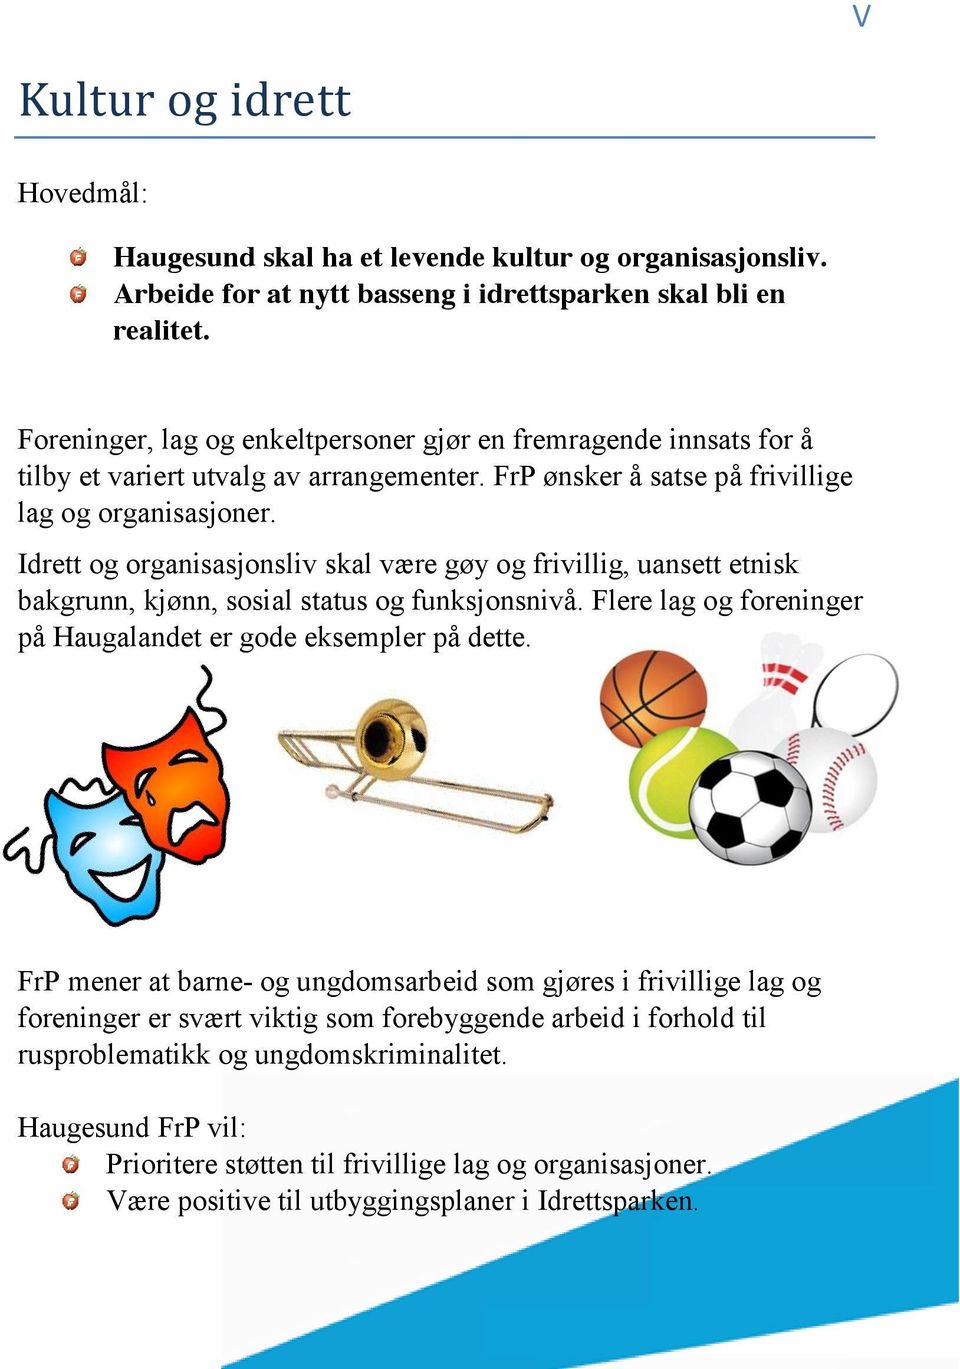 Idrett og organisasjonsliv skal være gøy og frivillig, uansett etnisk bakgrunn, kjønn, sosial status og funksjonsnivå. Flere lag og foreninger på Haugalandet er gode eksempler på dette.